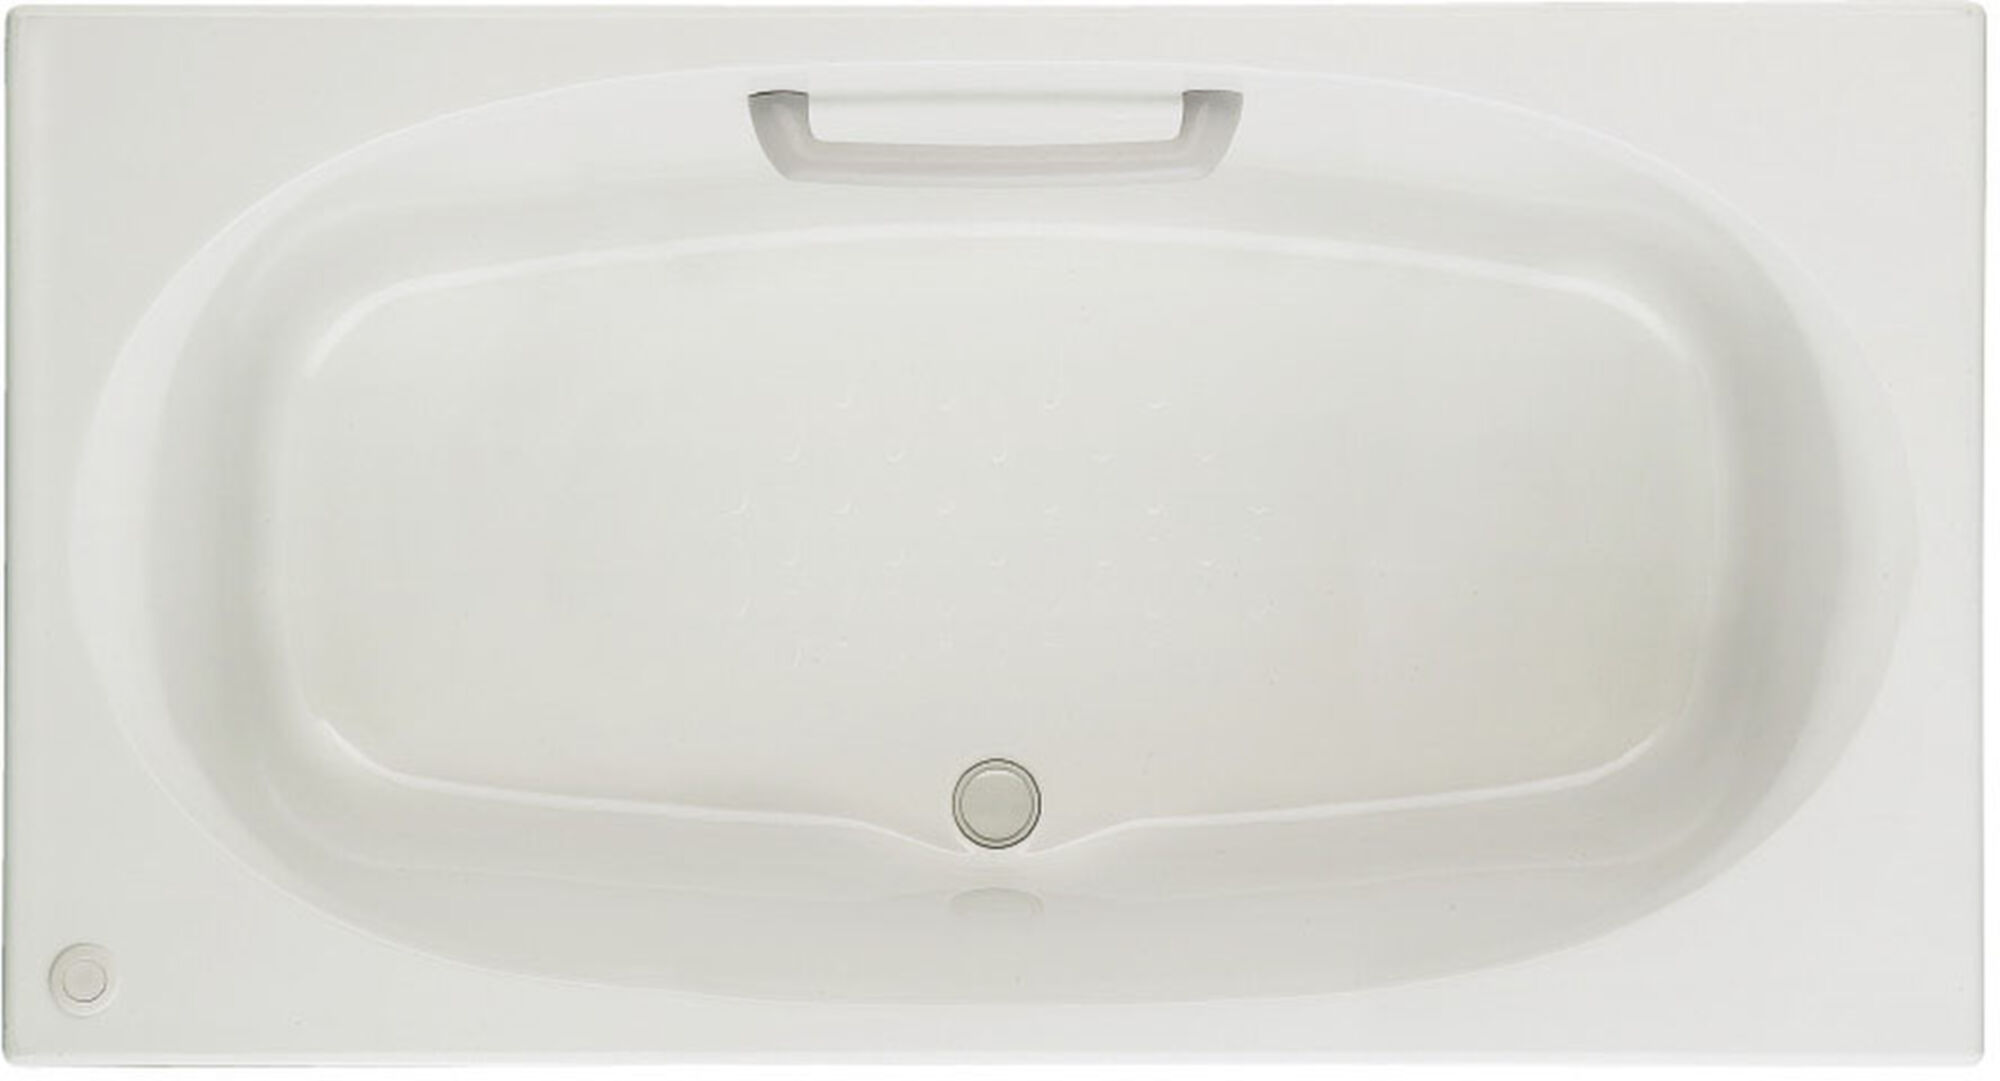 シャイントーン浴槽_1400サイズ(1398x750)_和洋折衷タイプ